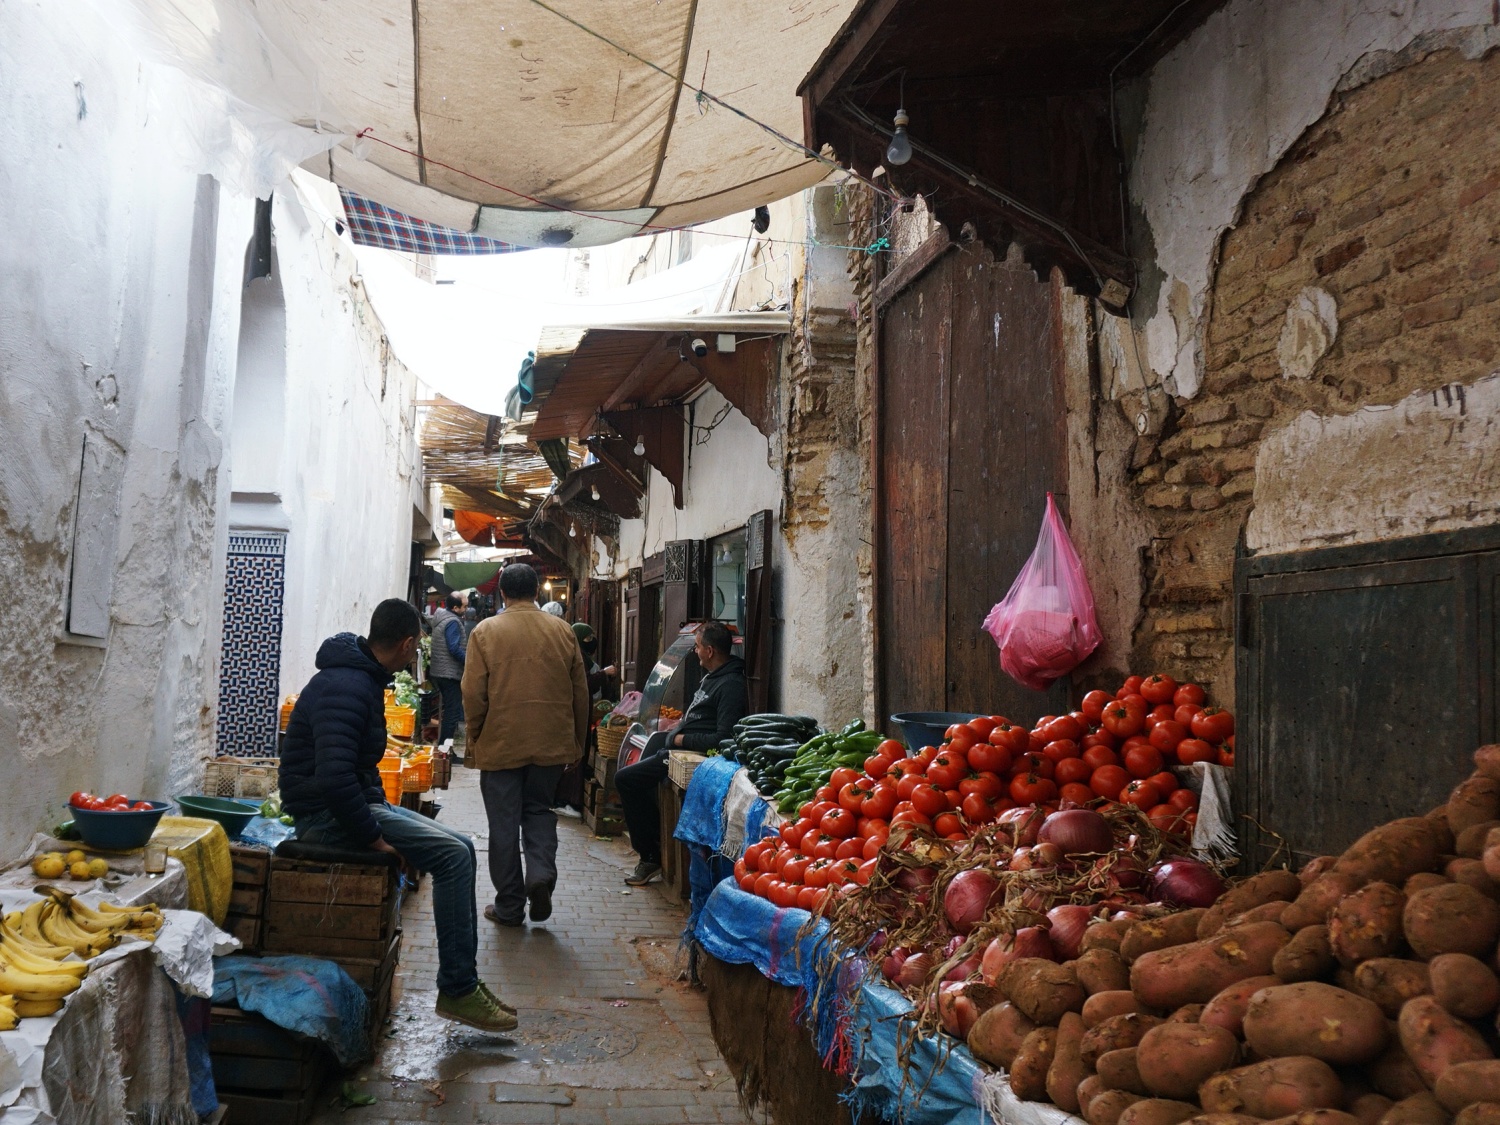 Fes Medina market